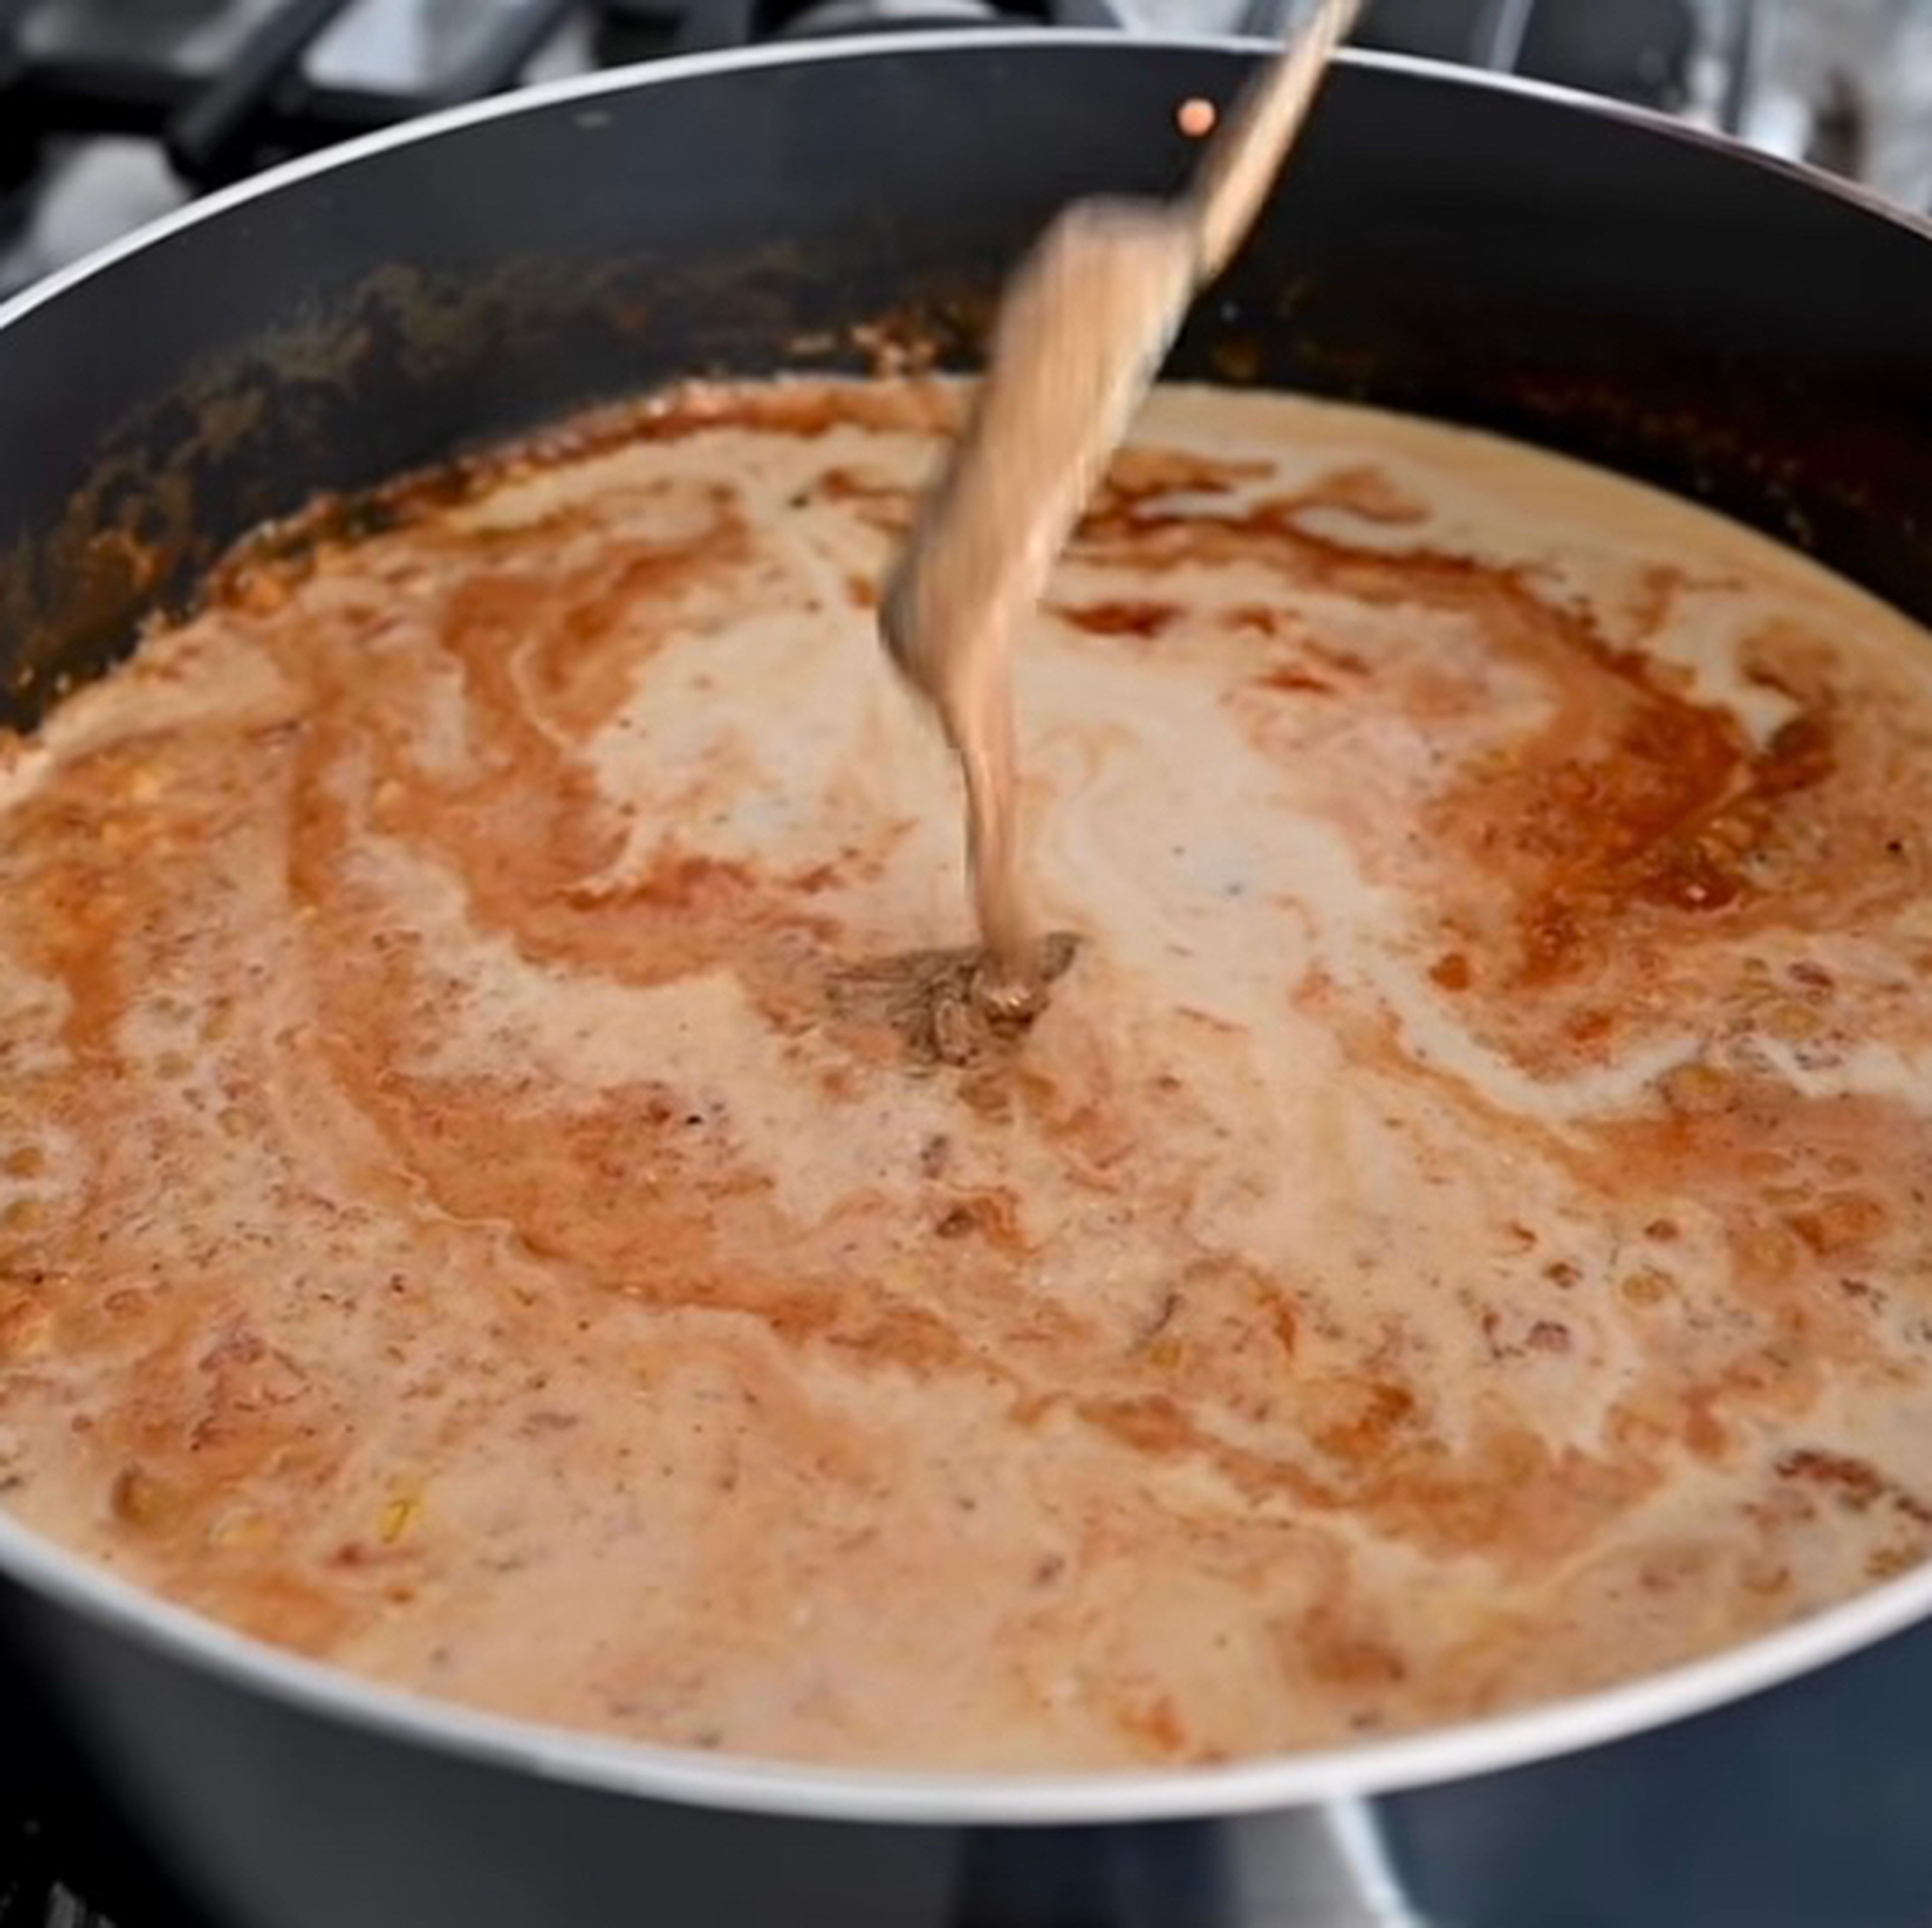 Kokosmilch und Mandelbutter dazugeben und gut mischen. Die Mandelbutter gibt dem Curry eine ganz besondere Note. Anschließend salzen und pfeffern.